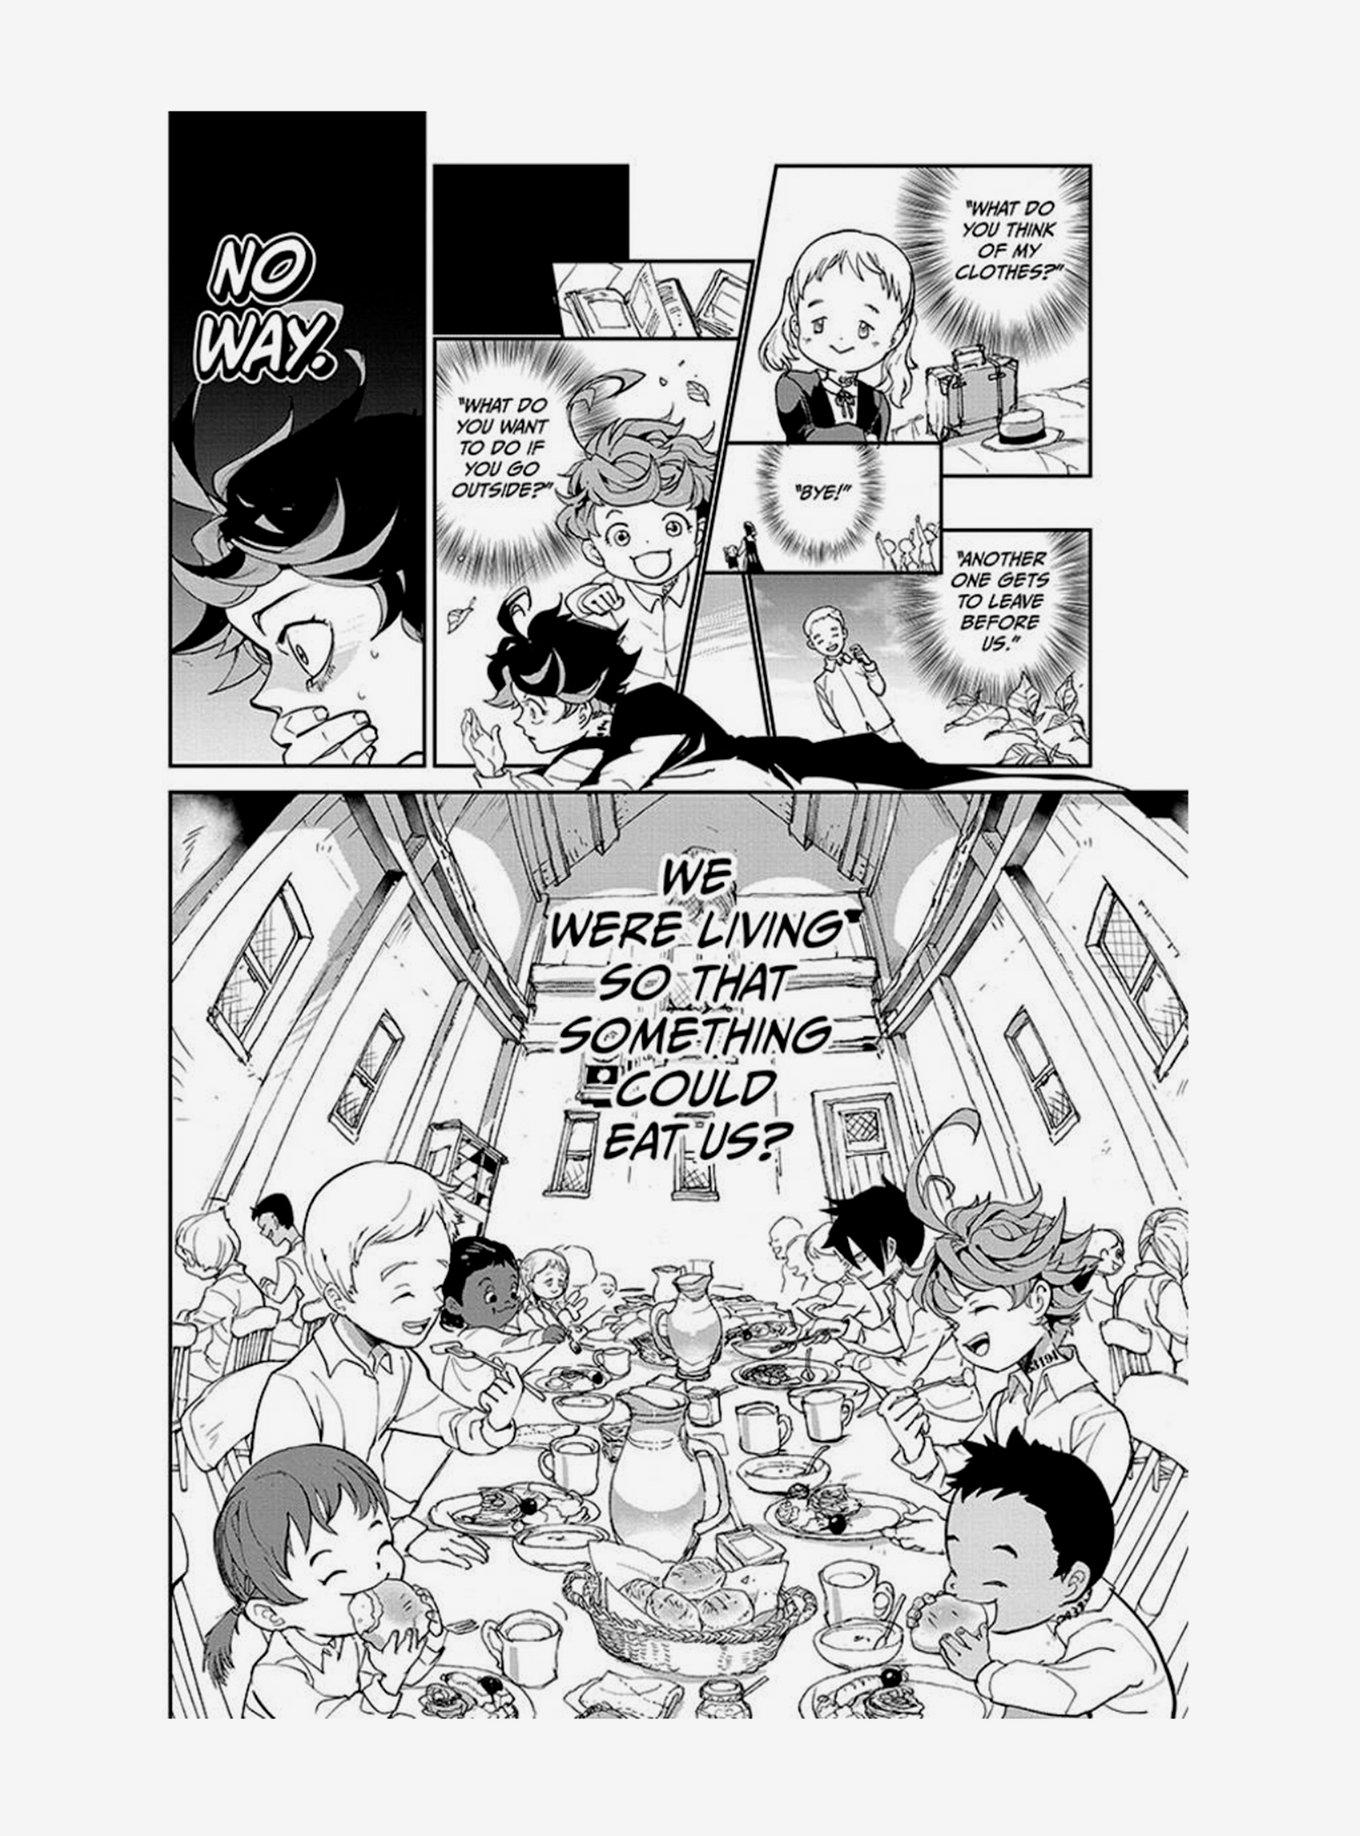 The Promised Neverland Volume 1 Manga, , alternate